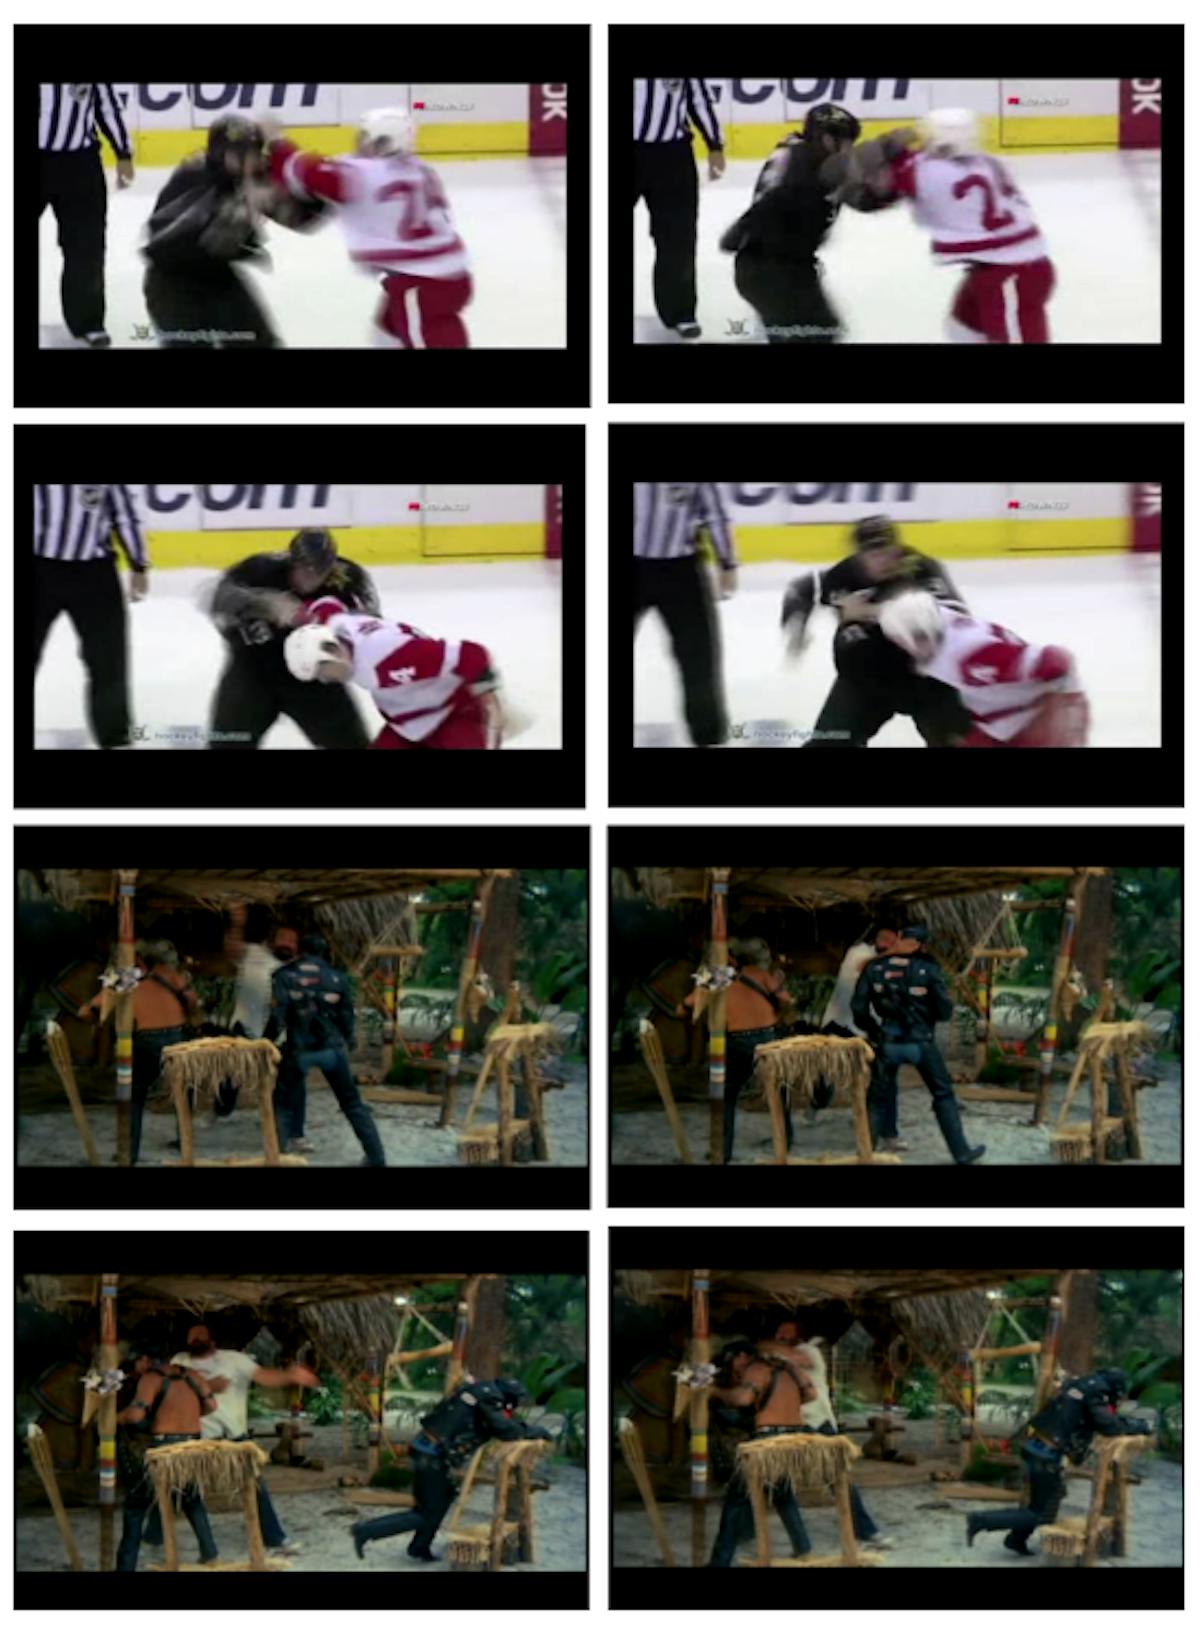 Figura 4.1: Fotogramas de muestra de los videos de peleas en los conjuntos de datos de Hockey (arriba) y películas de acción (abajo).